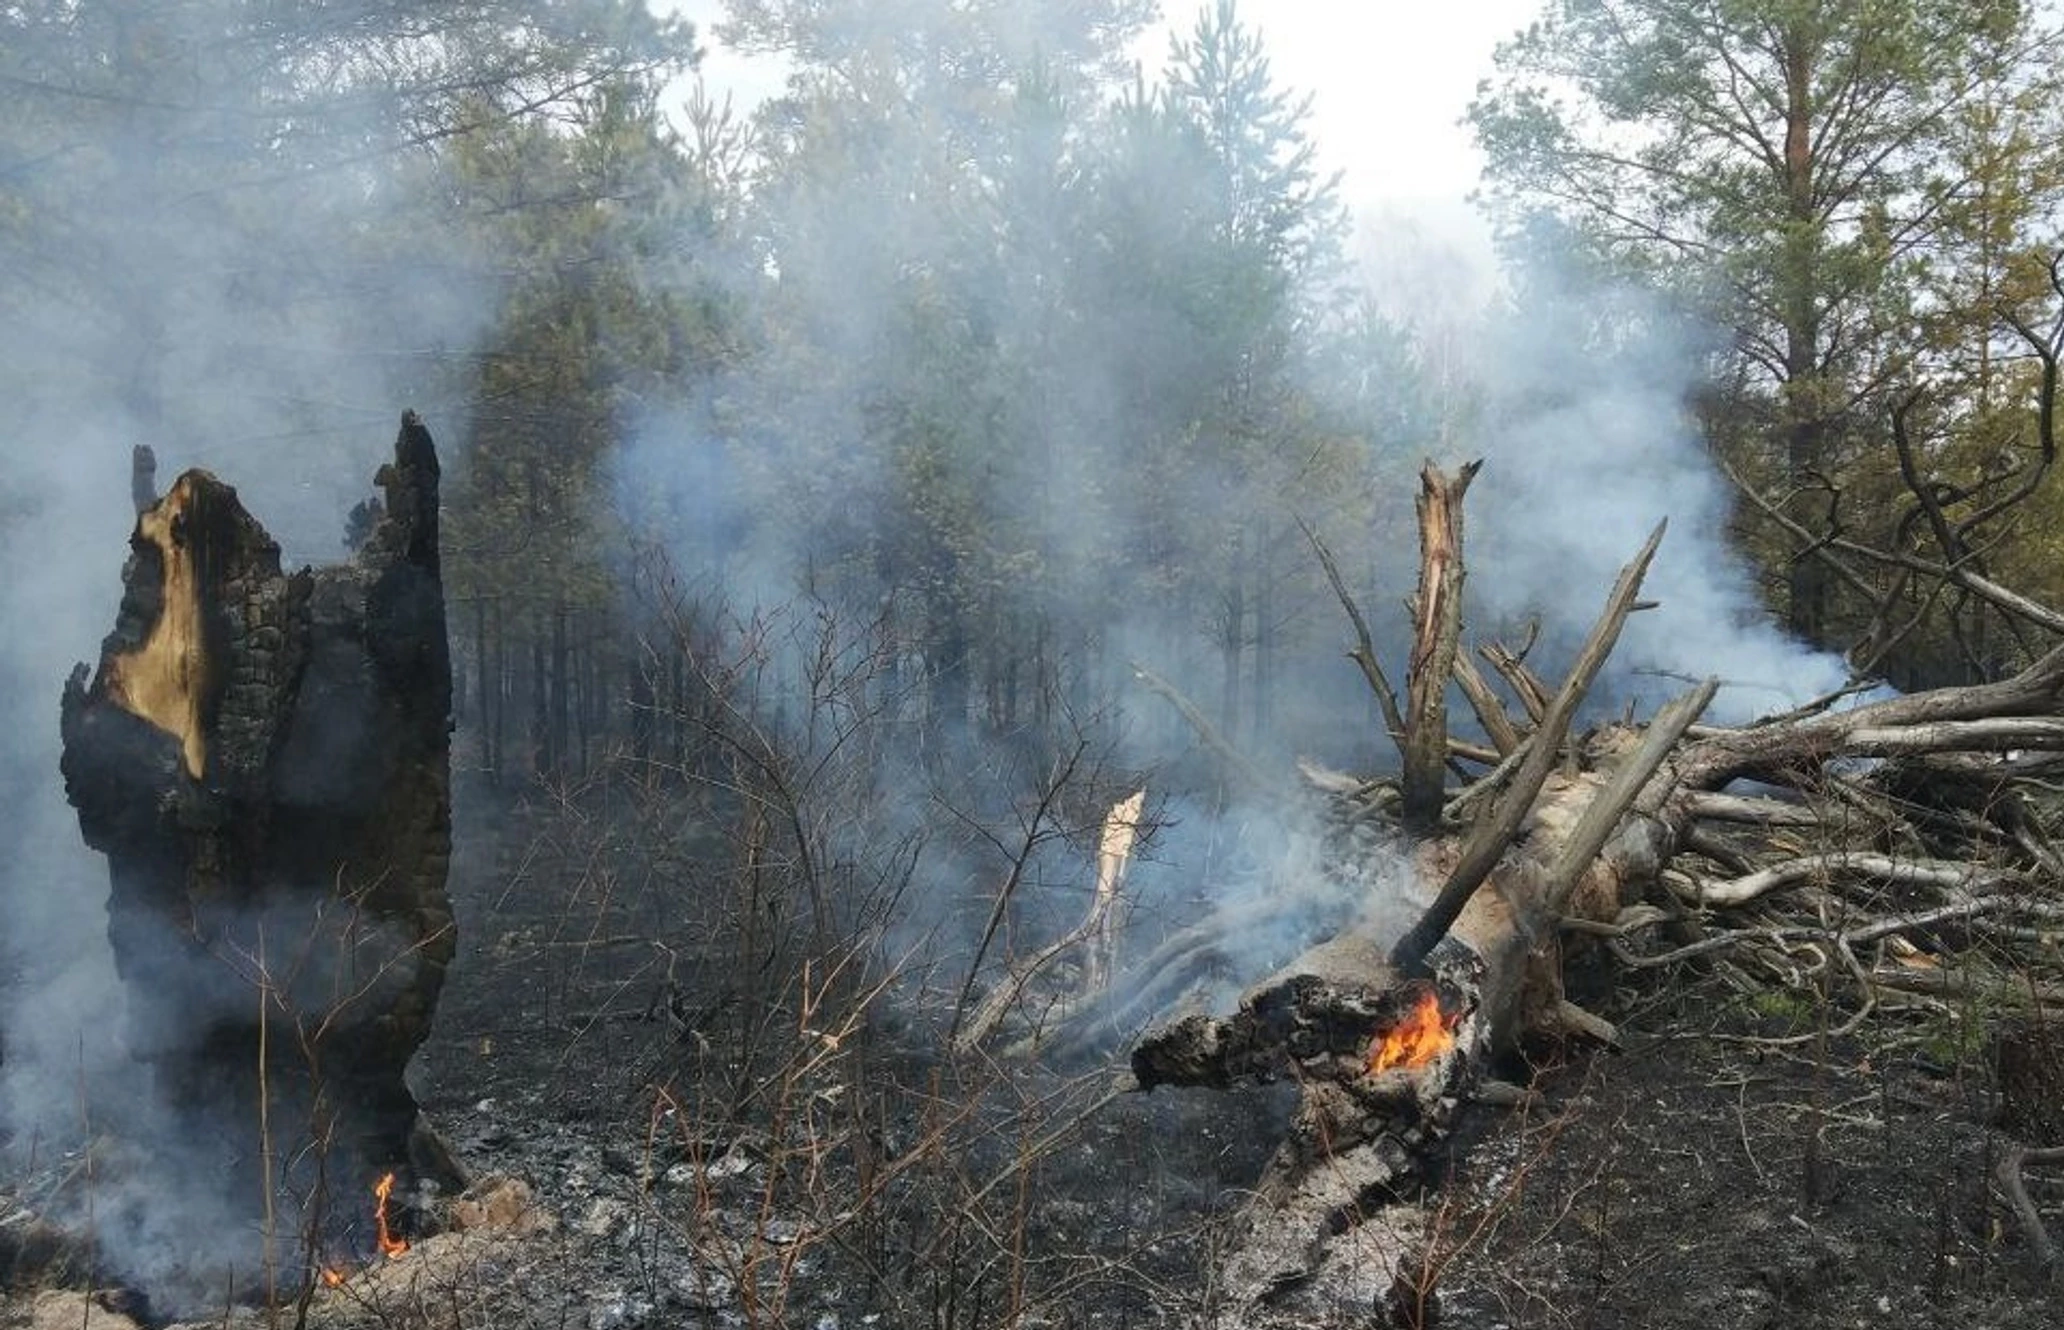 Сгорит или згорит. Пожар в национальном парке Зигальга. Пожар в лесу. Лес после пожара. Пожар фото.